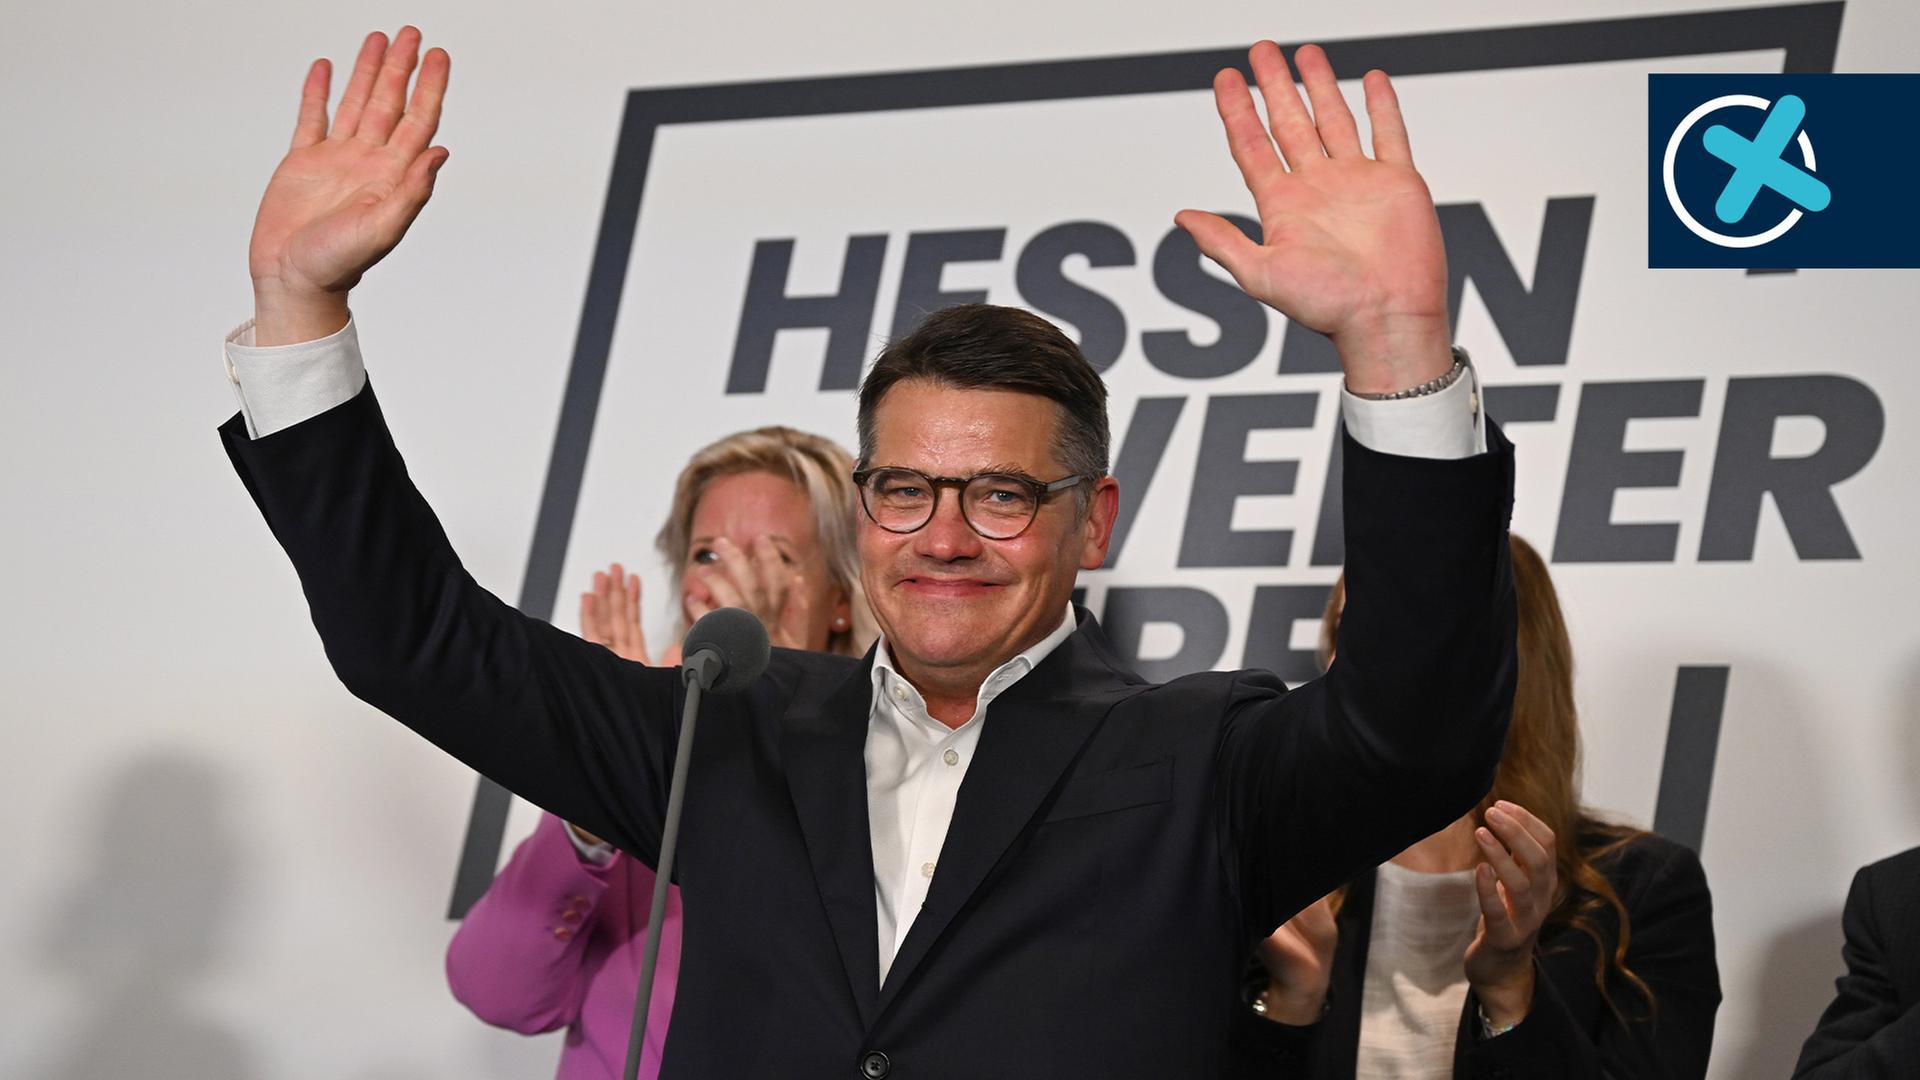 Vorläufiges Endergebnis der Landtagswahl in Hessen: CDU stärkste Kraft, AfD auf Platz zwei, FDP im Landtag